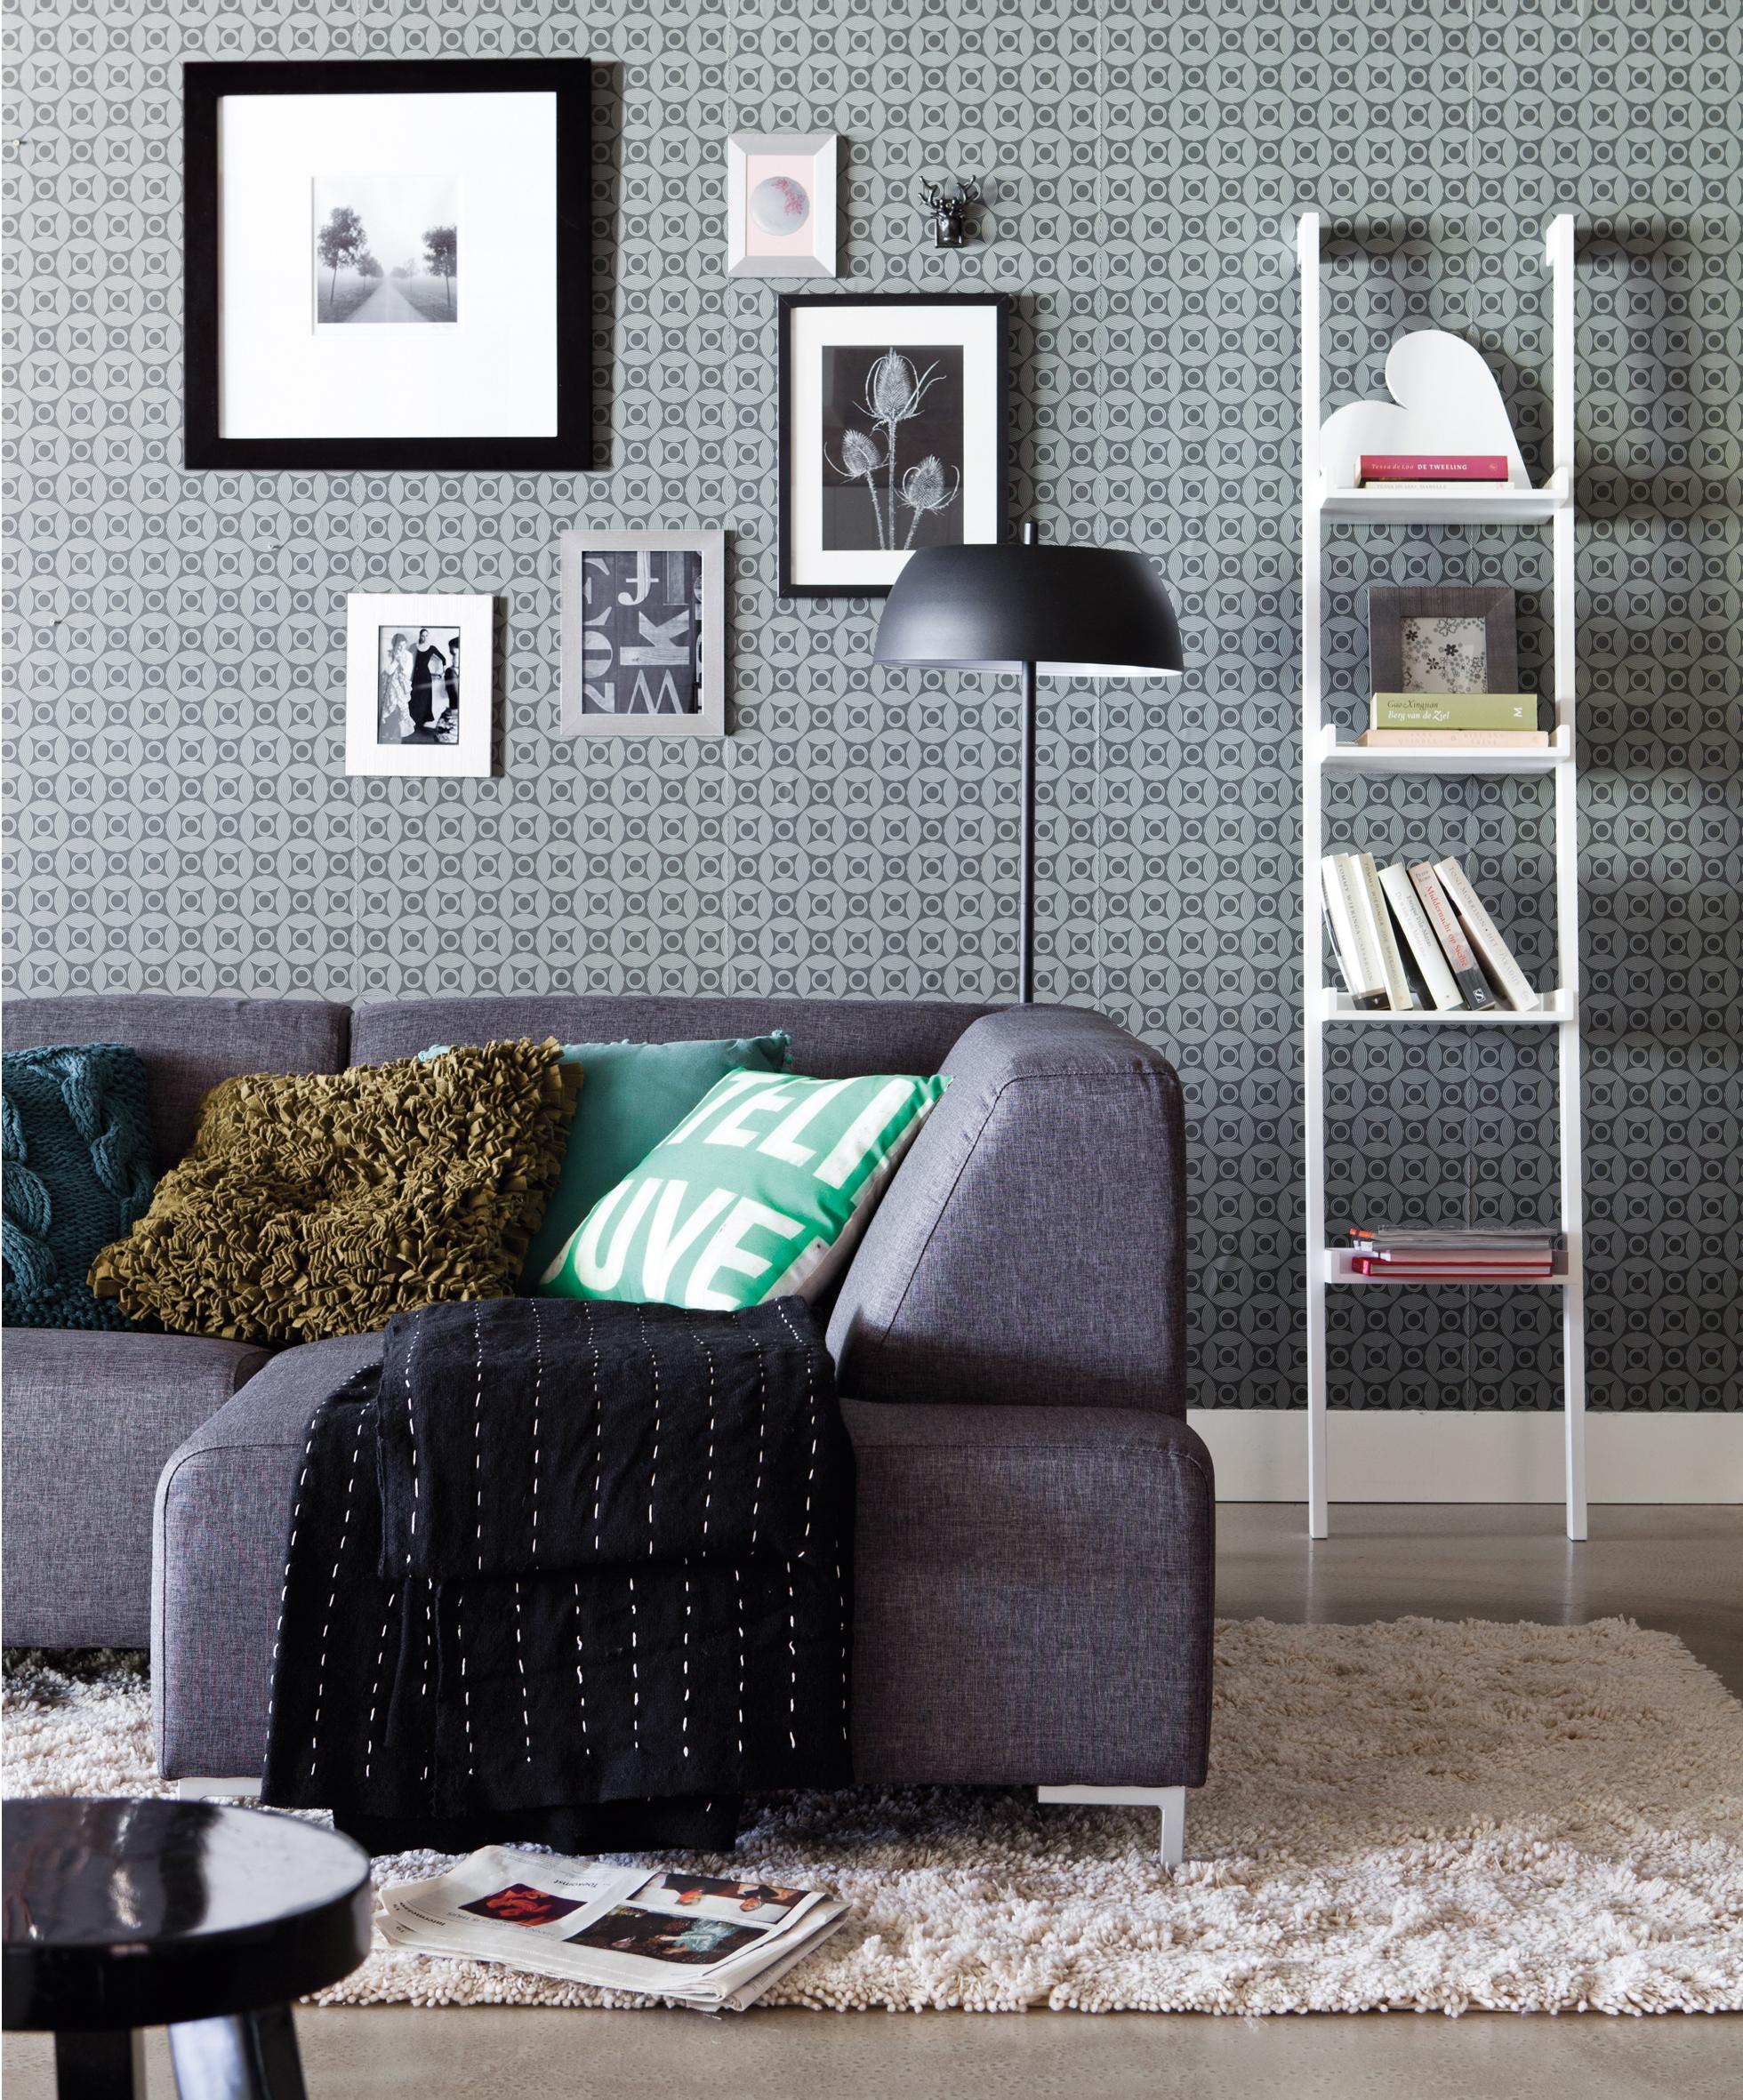 Leiterregal und Mustertapete im Wohnzimmer #grauessofa #mustertapete #leiterregal #zimmergestaltung ©Wayfair